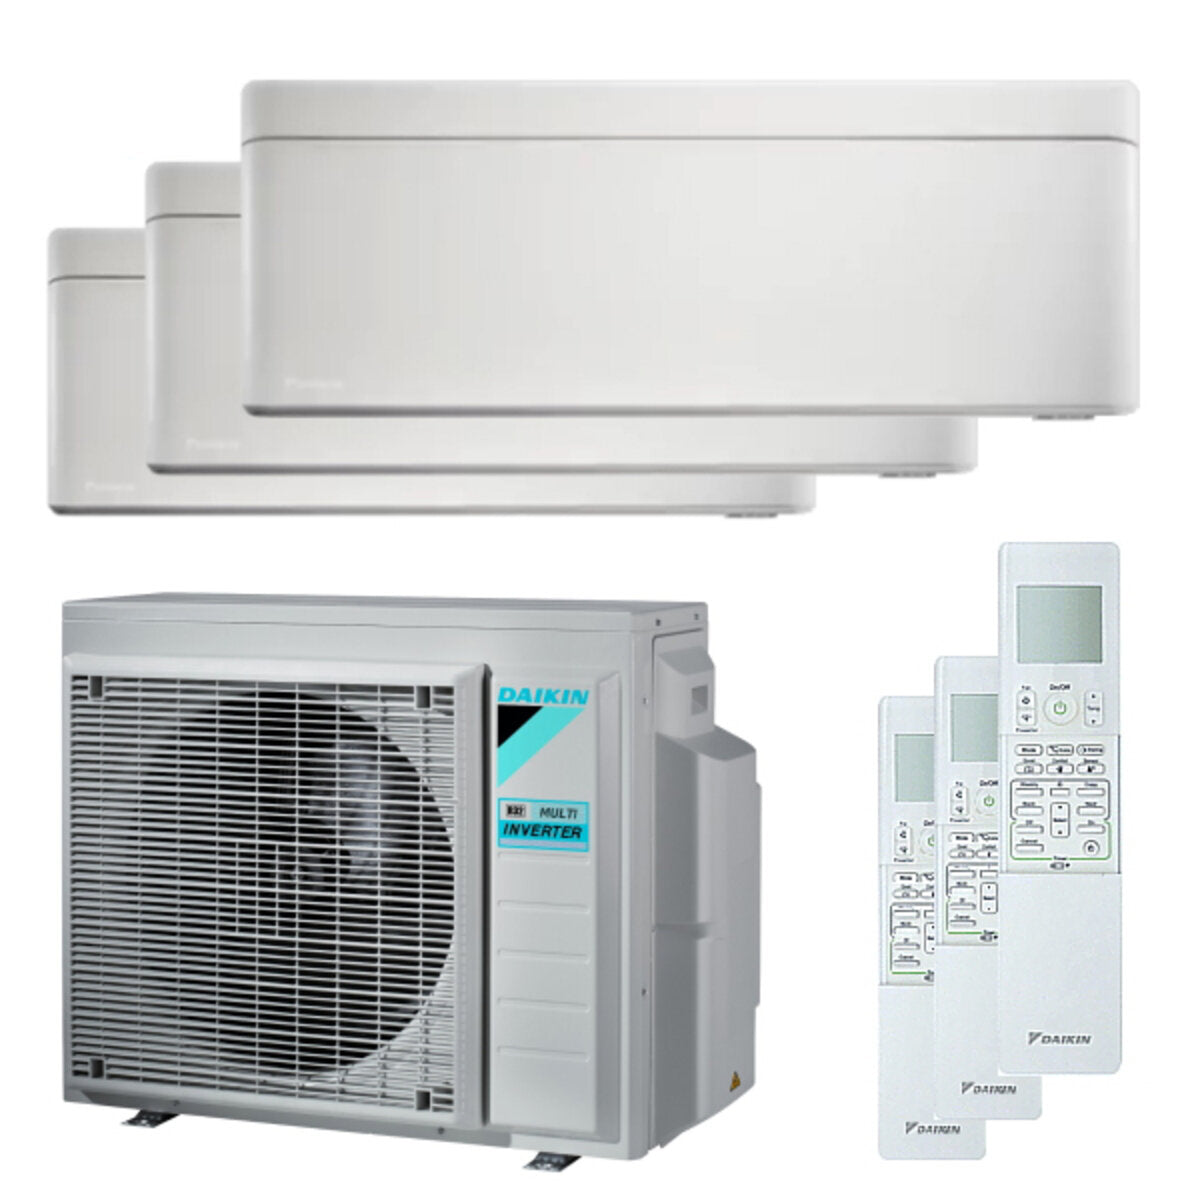 Daikin Stylish trial split air conditioner 7000 + 7000 + 7000 BTU inverter A +++ wifi outdoor unit 5.2 kW